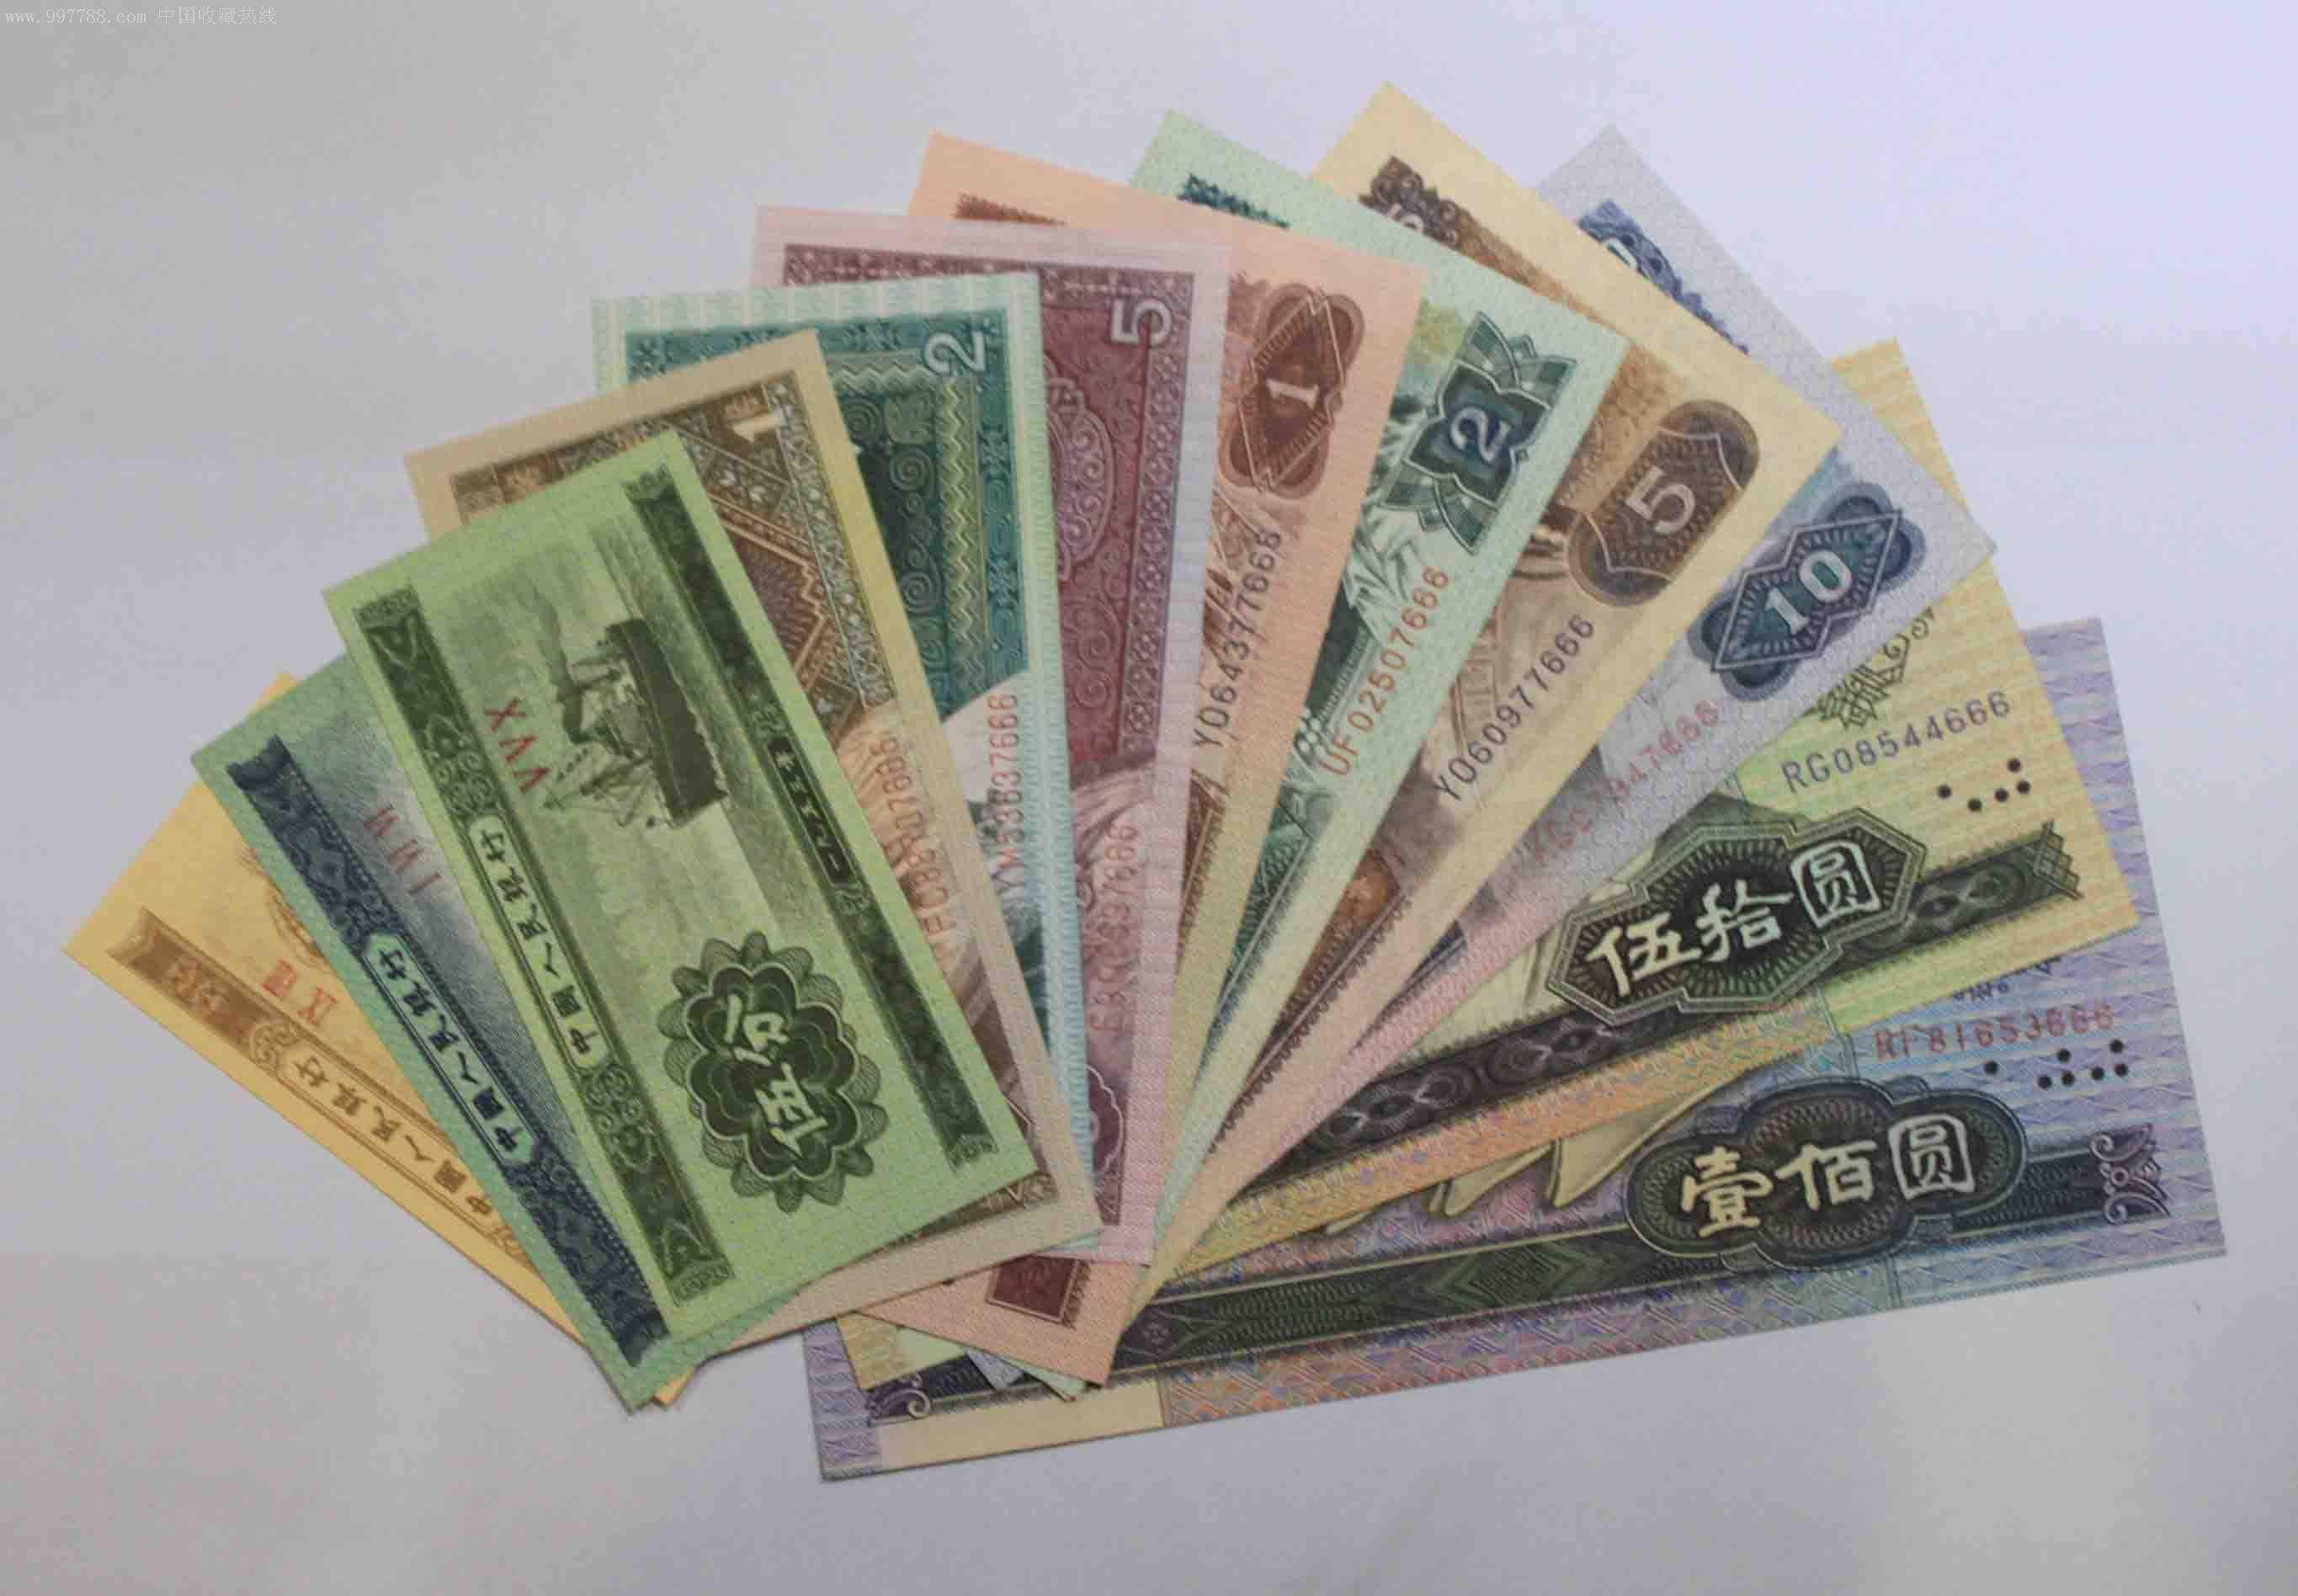 99版100元龙卡收购连体钞收藏长城装帧